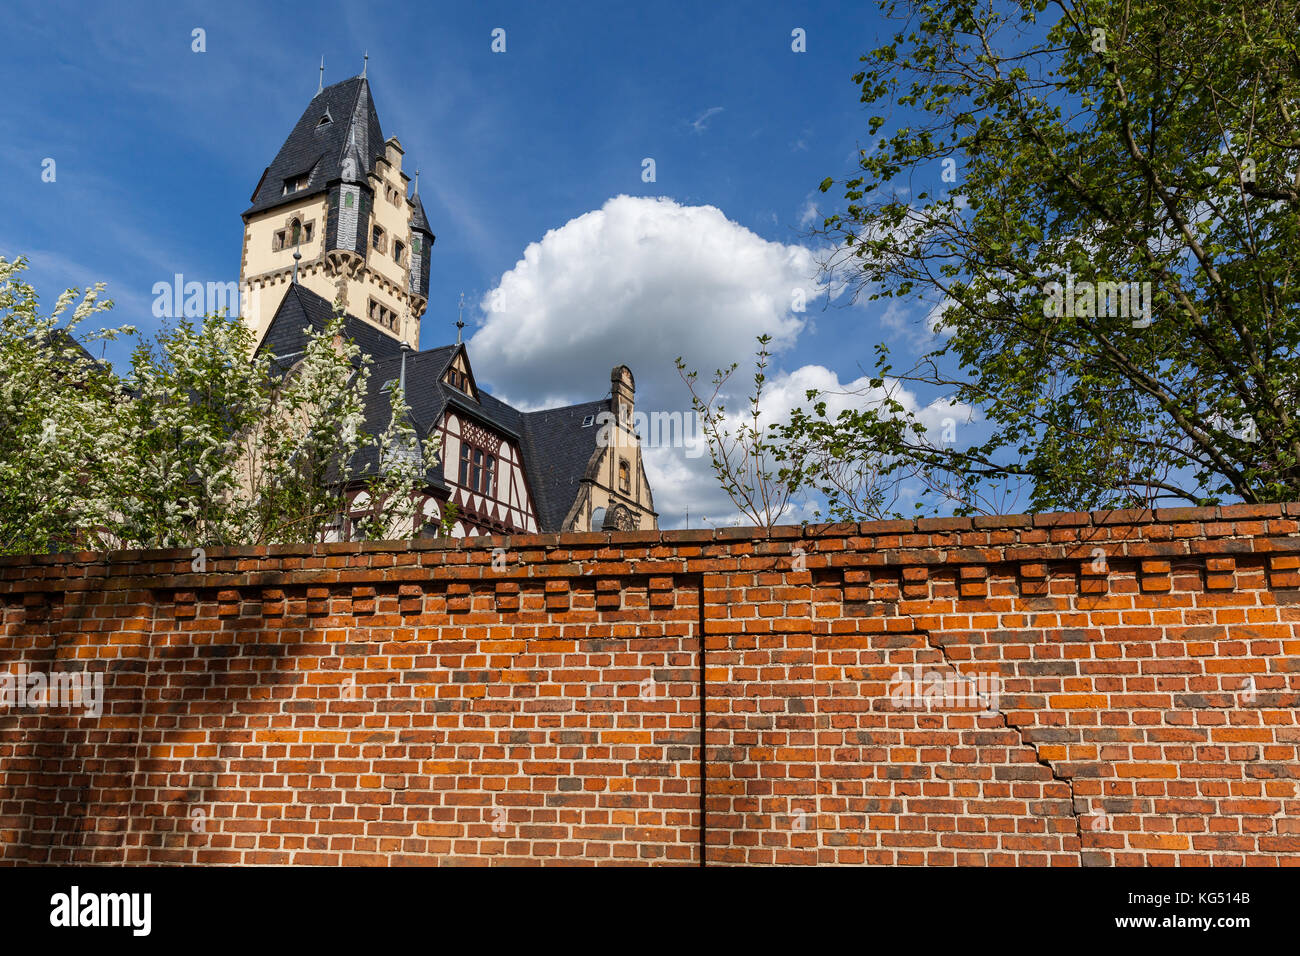 ehemalige Fachschule für Gartenbau Quedlinburg Stock Photo